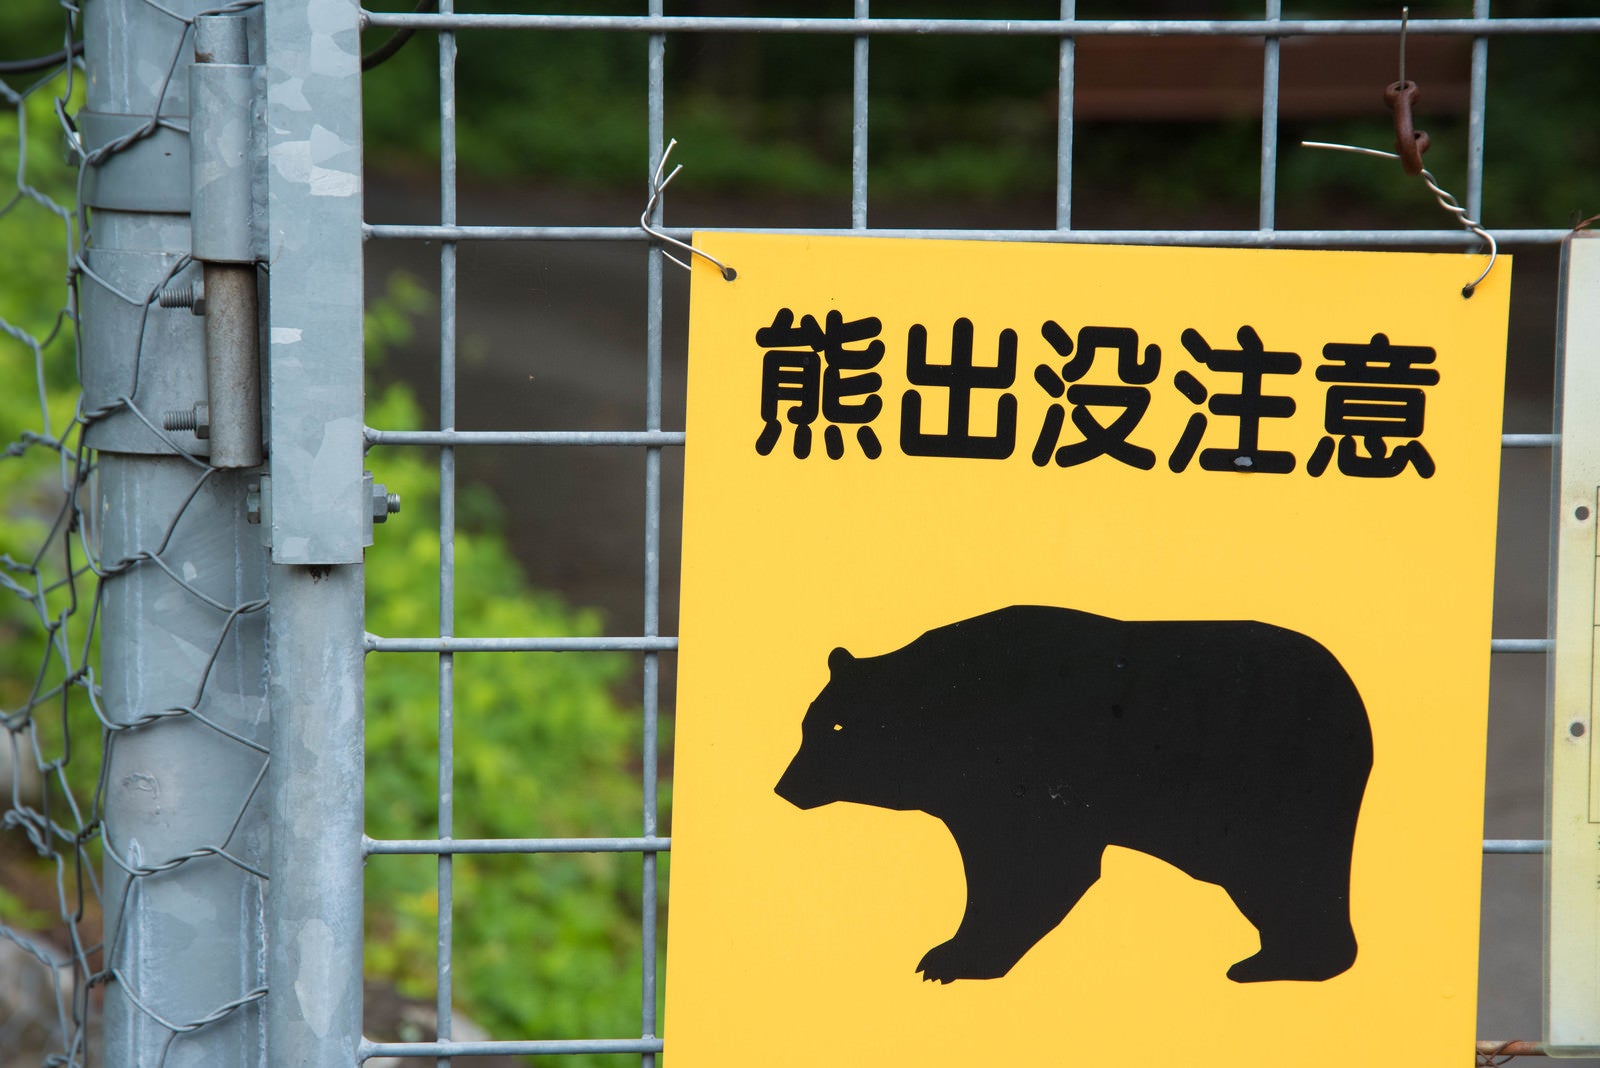 「熊出没注意の黄色い警告板」の写真